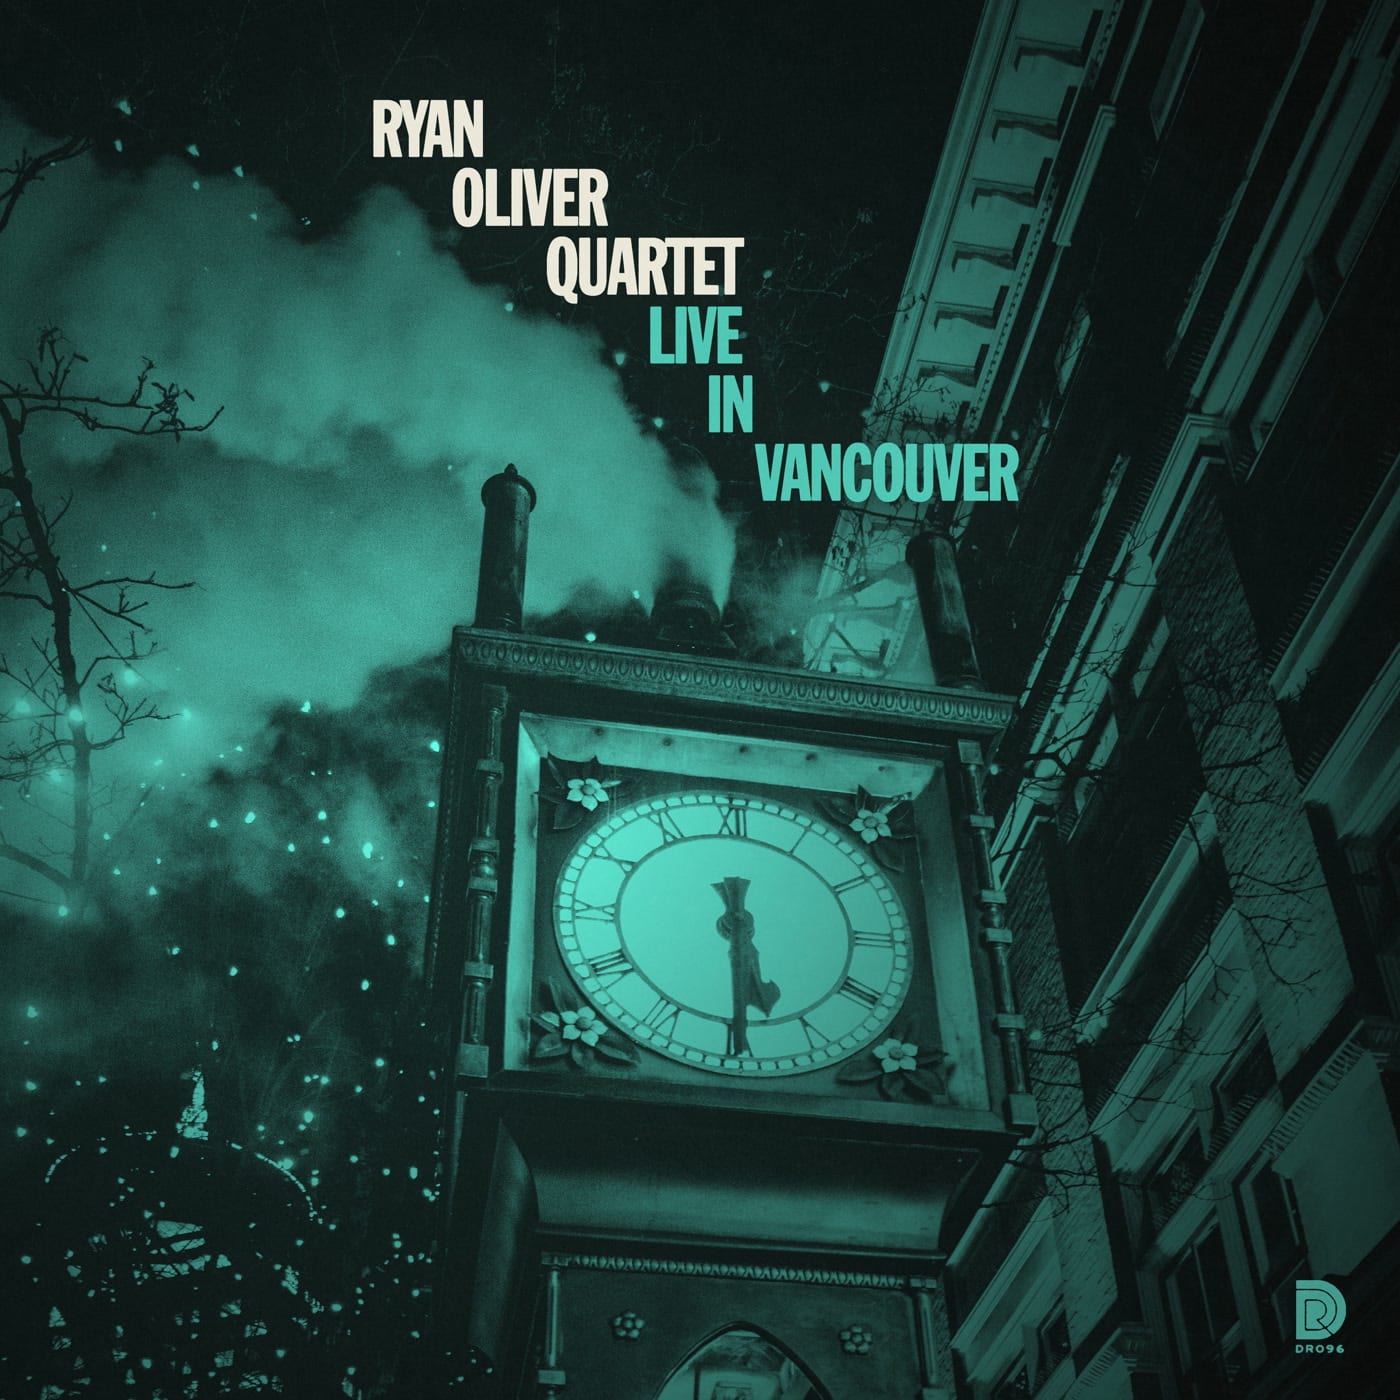 Live-in-Vancouver-Ryan-Oliver.jpg